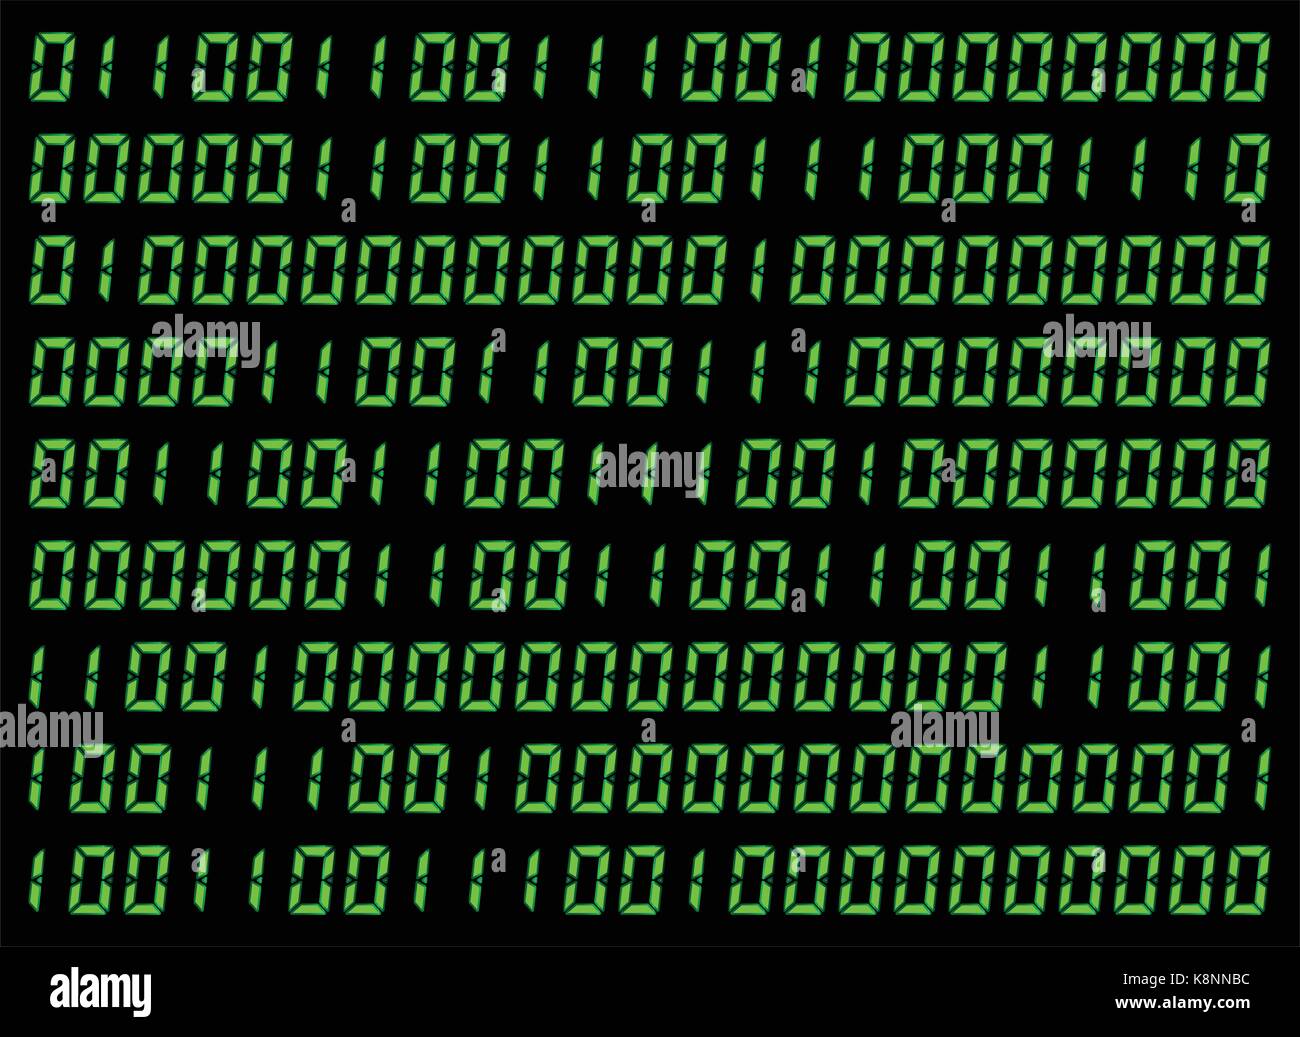 0,1 chiffres vector wallpaper. Code binaire vert sur fond noir. Matrice numérique abstract illustration de la technologie. Illustration de Vecteur